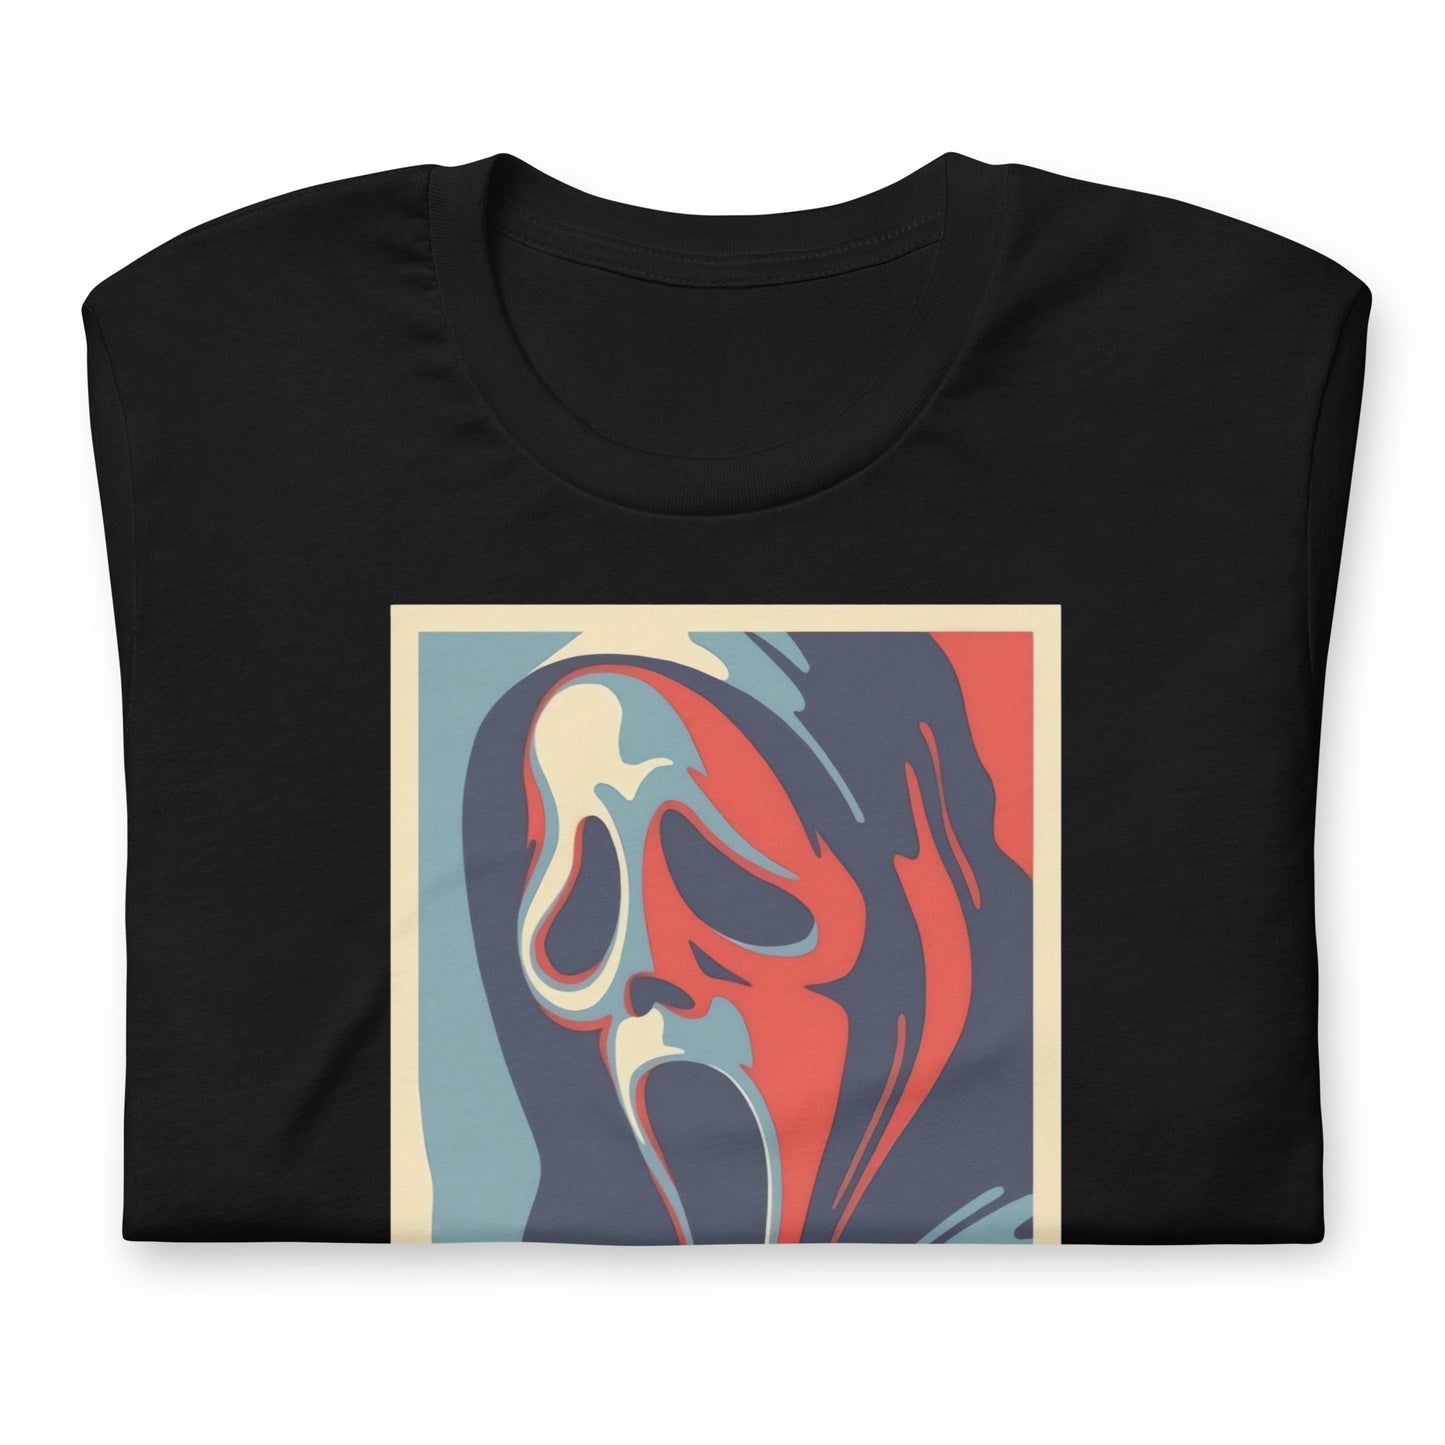 Camiseta Scream, nuestras opciones de playeras son Unisex. disponible en Superstar. Compra y envíos internacionales.